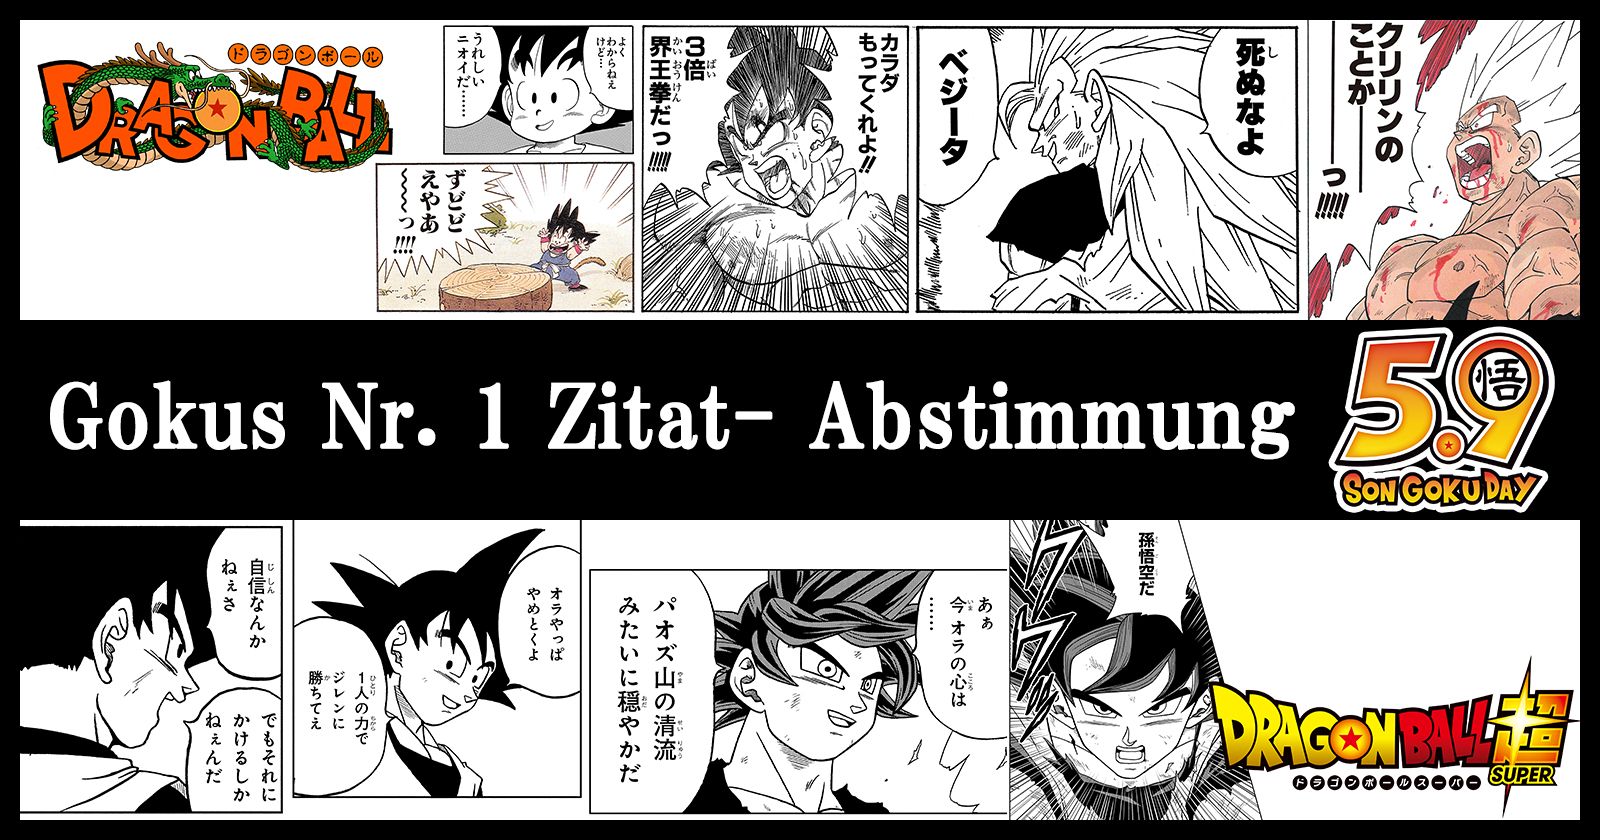 Gokus Nr. 1-Zitat- Abstimmung läuft jetzt, um den Goku Day zu feiern !! 1. Platz, der in echten Merch verwandelt werden soll!